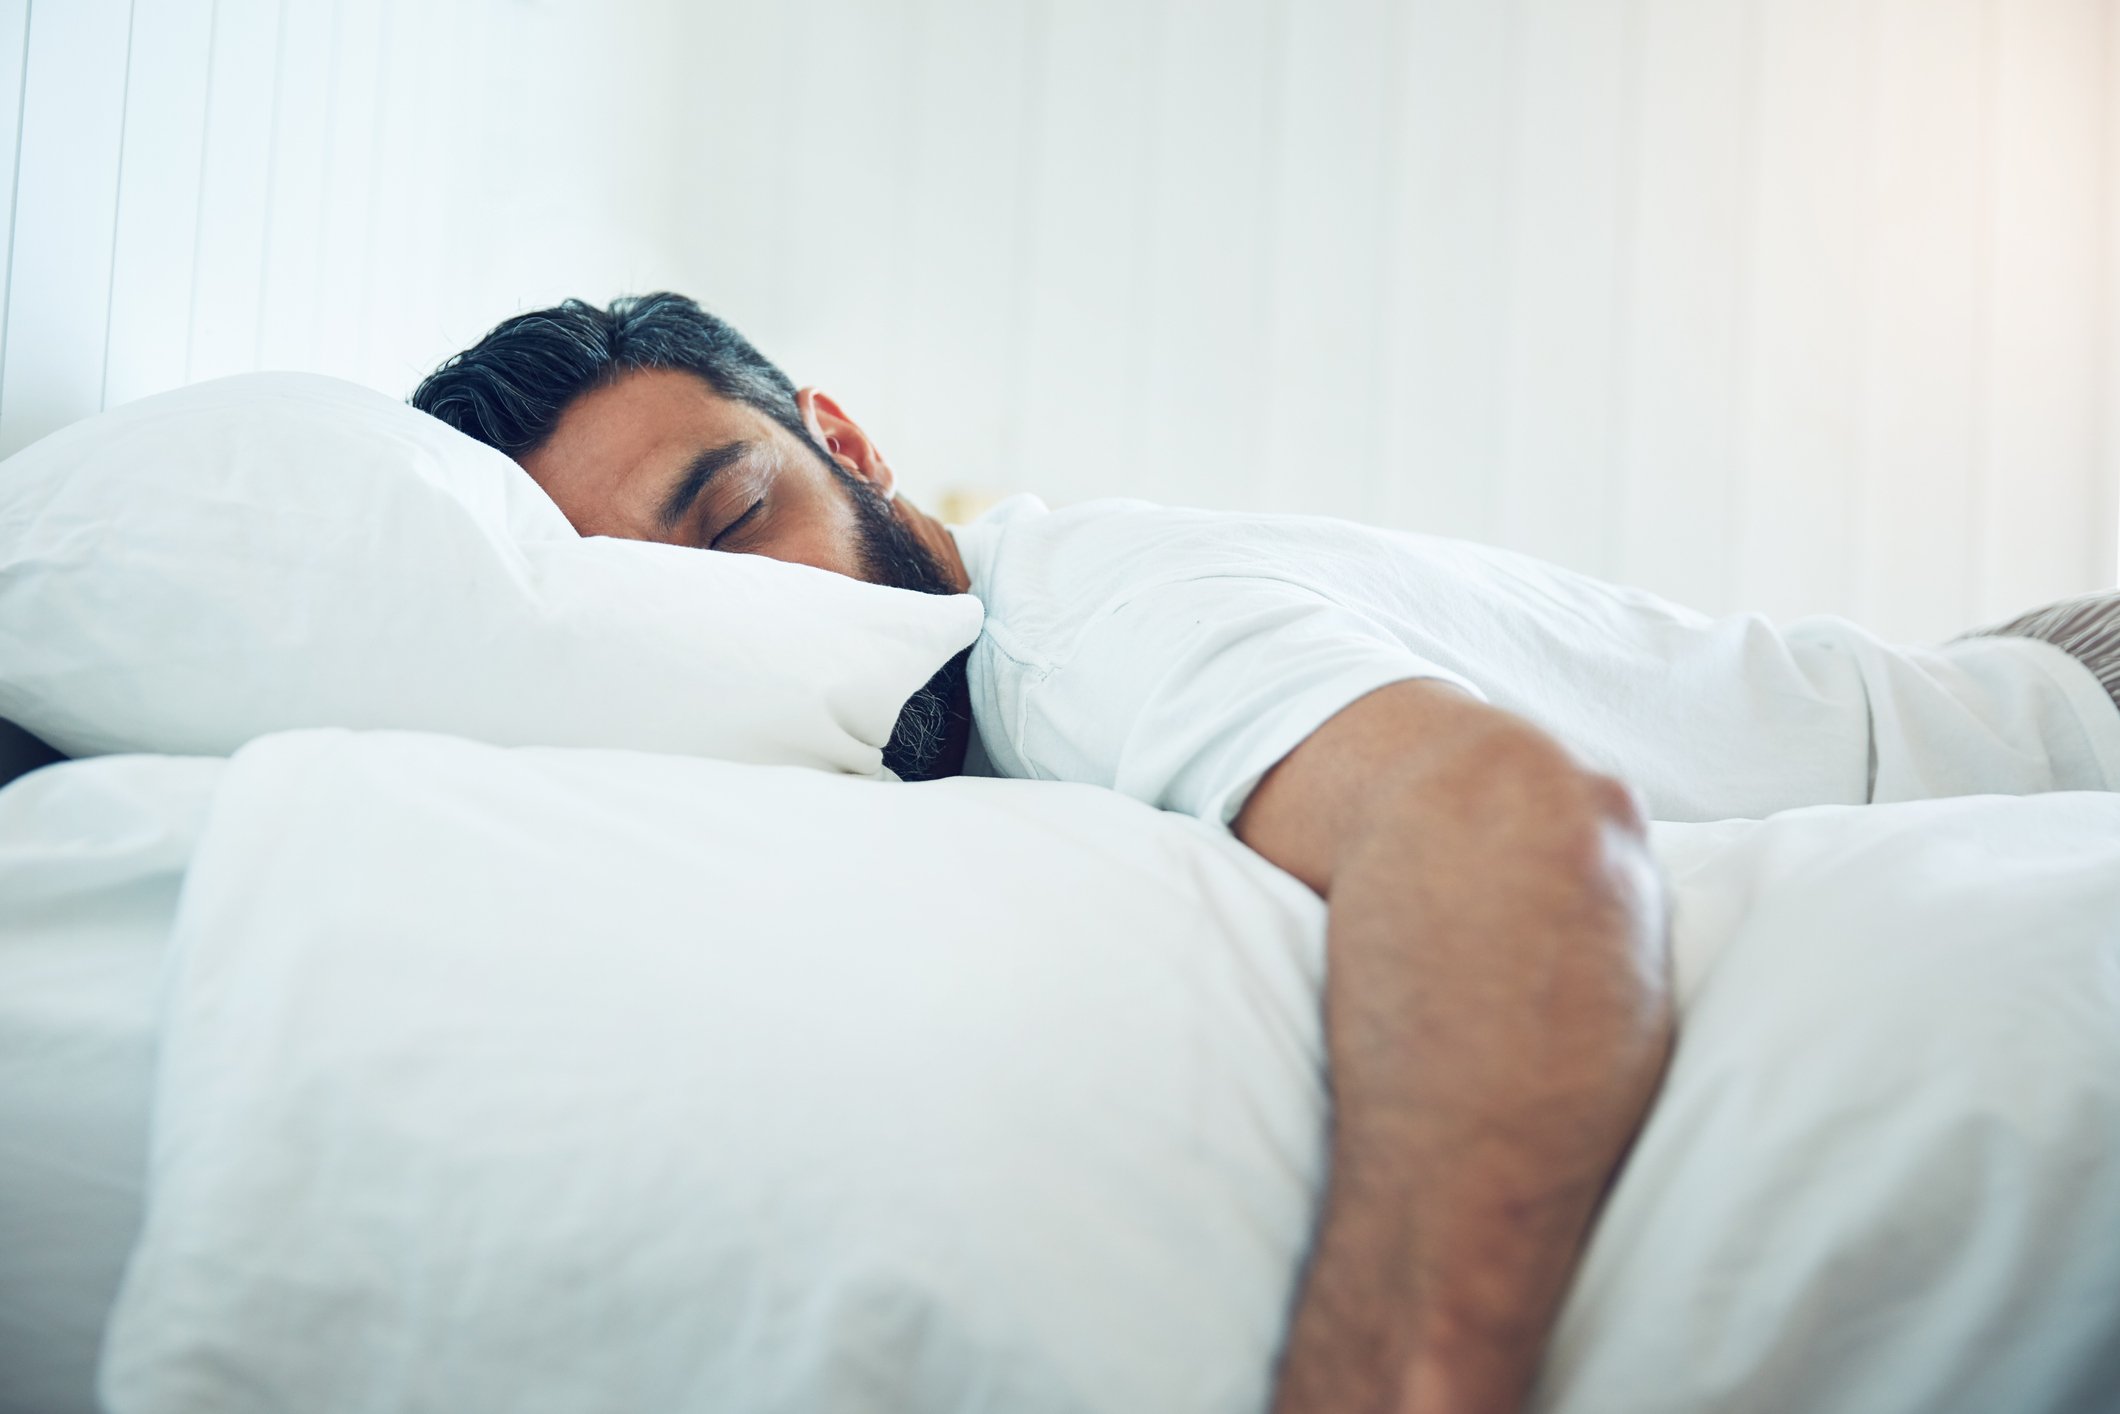 الإرهاق والنوم يجعلانك أكثر عُرضة للإصابة بـ كورونا